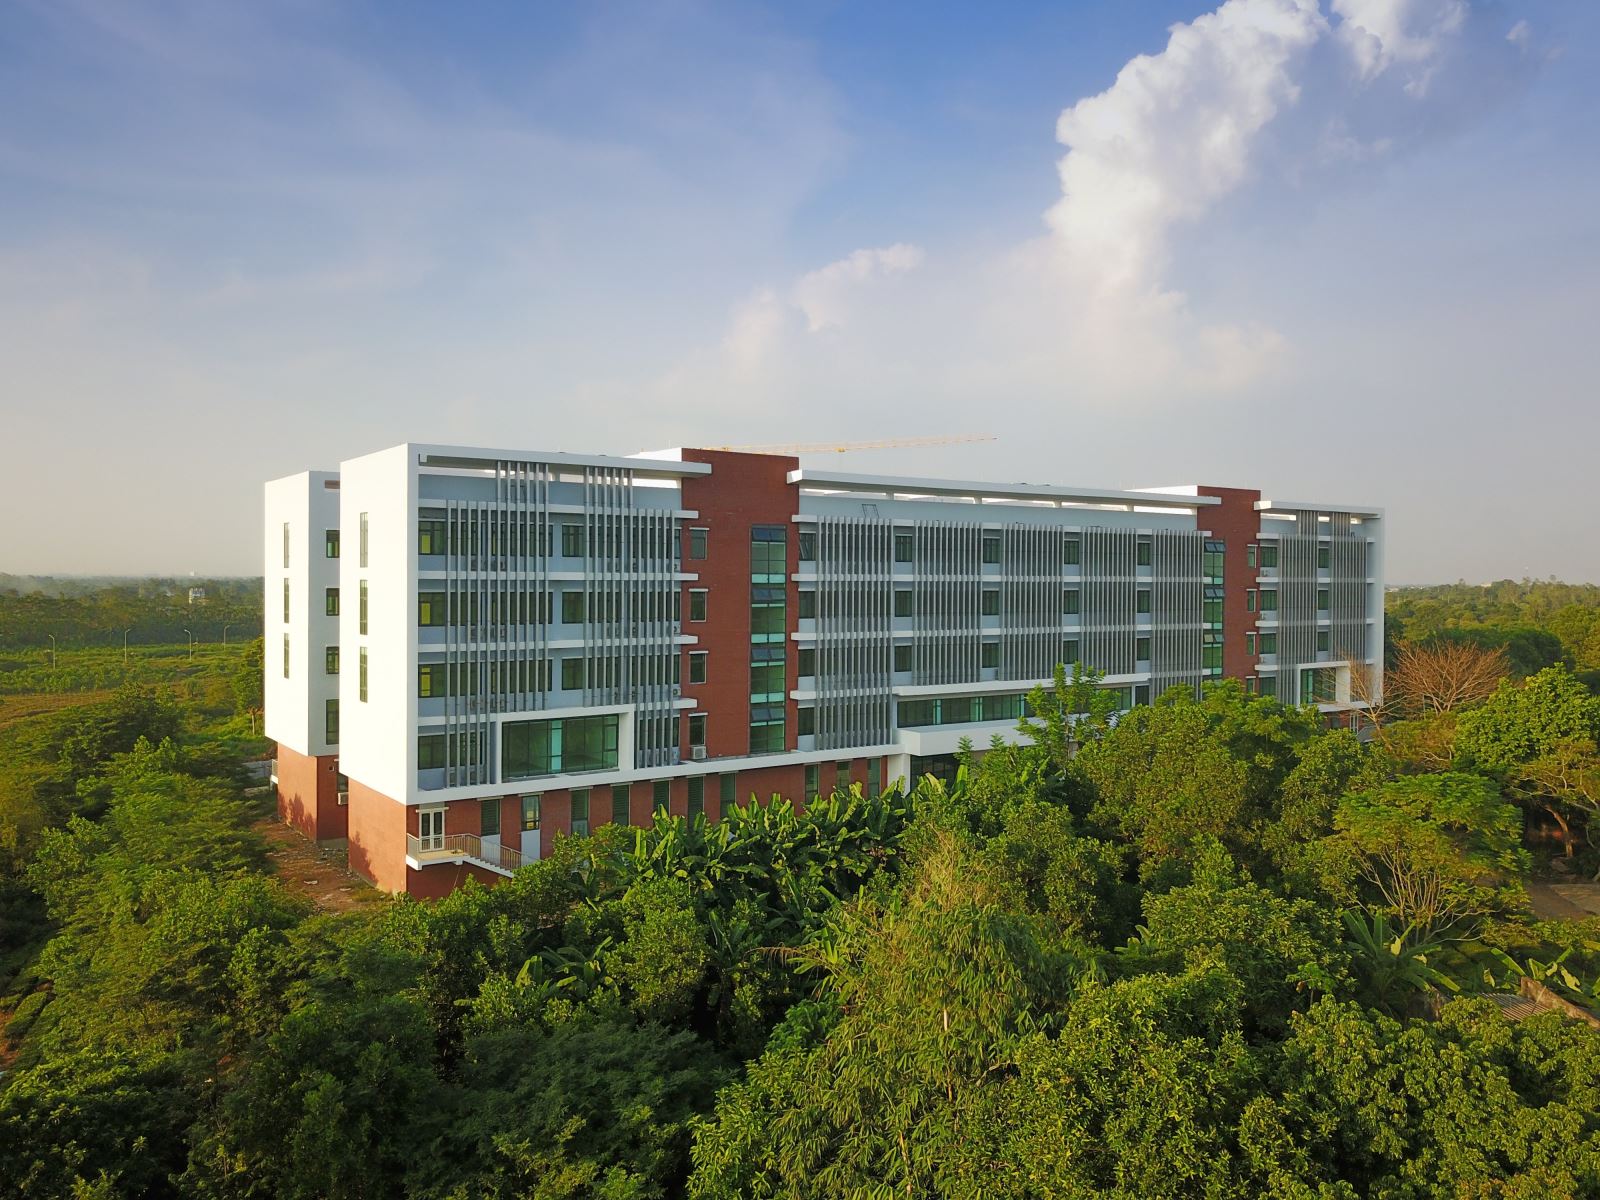 Tháng 9-2022, Đại học Quốc gia sẽ đủ điều kiện đón sinh viên học tập tại cơ sở Hoà Lạc